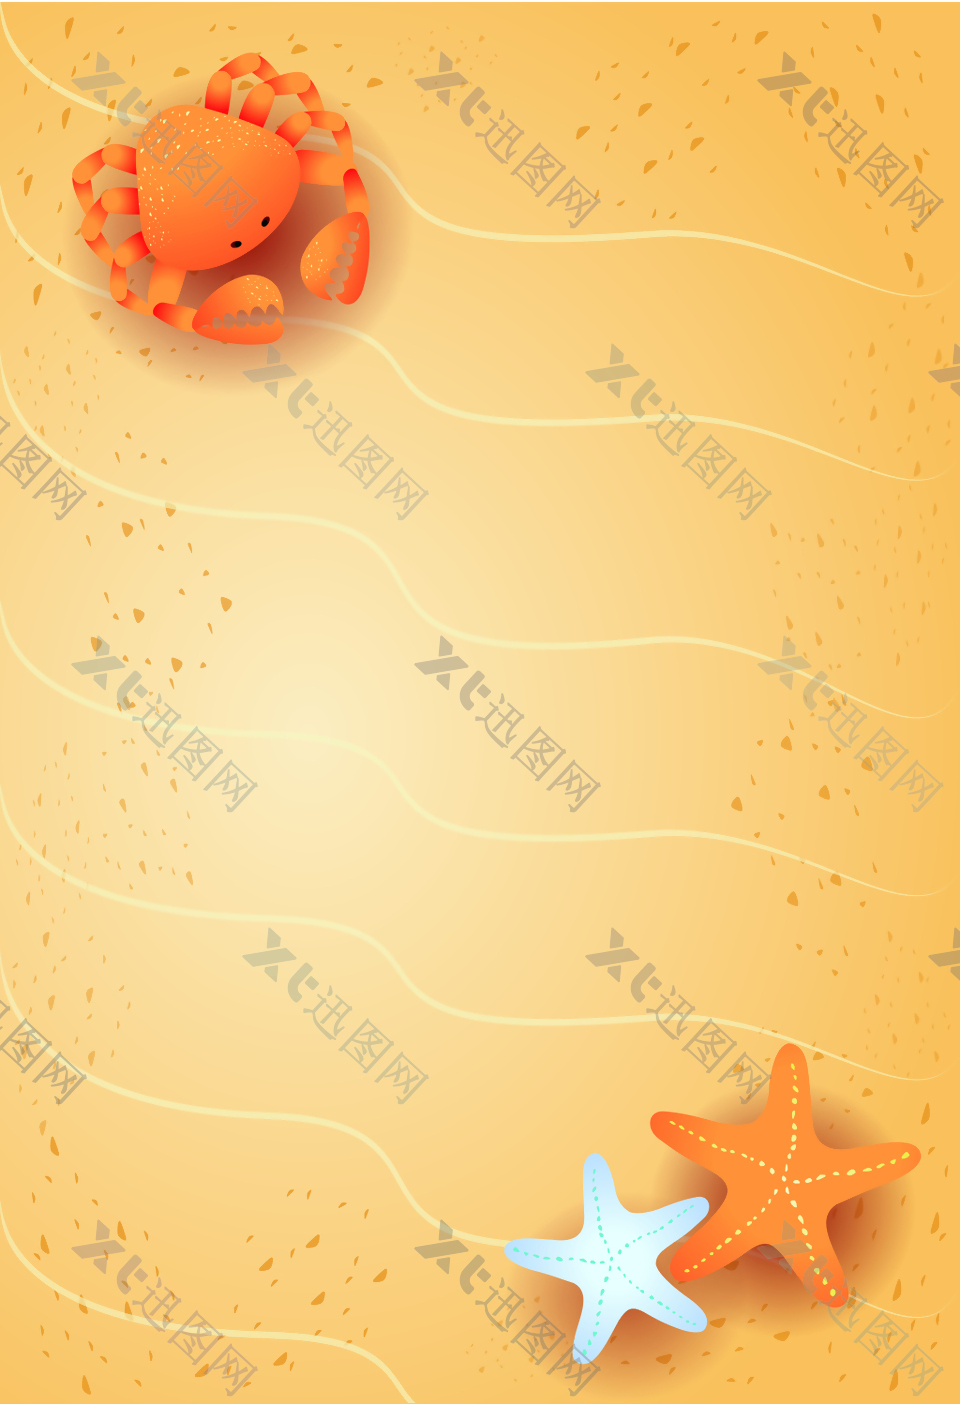 可爱手绘螃蟹海星沙滩海报背景素材